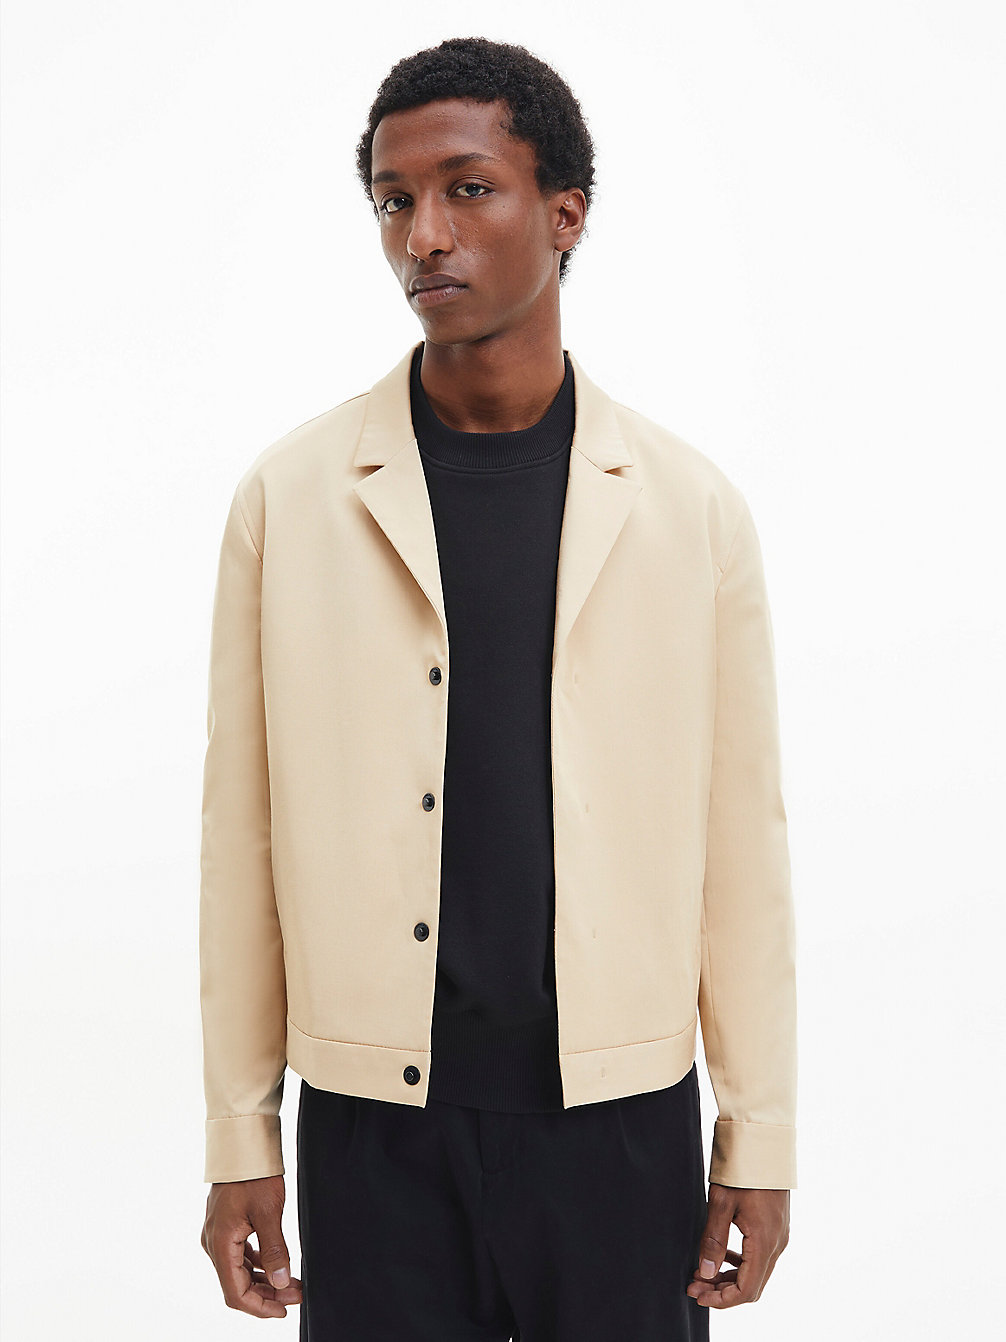 TRAVERTINE Tencel Twill Jacket undefined men Calvin Klein